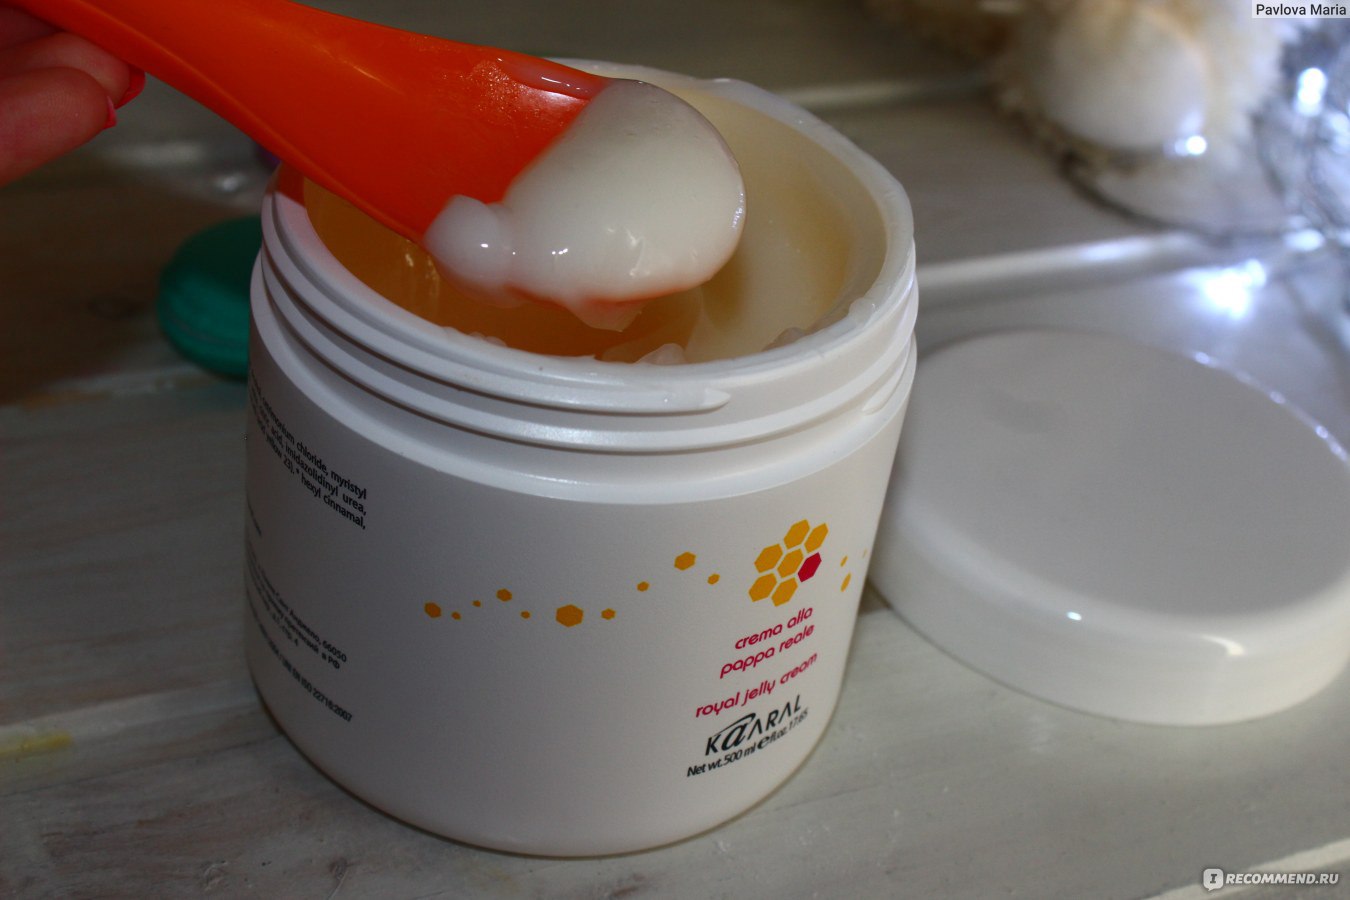 Kaaral jelly royal. Kaaral Royal Jelly Cream. Kaaral Royal Jelly Cream маска реконструир. С маточным молочком. Маска для волос в составе содержащая силиконы.